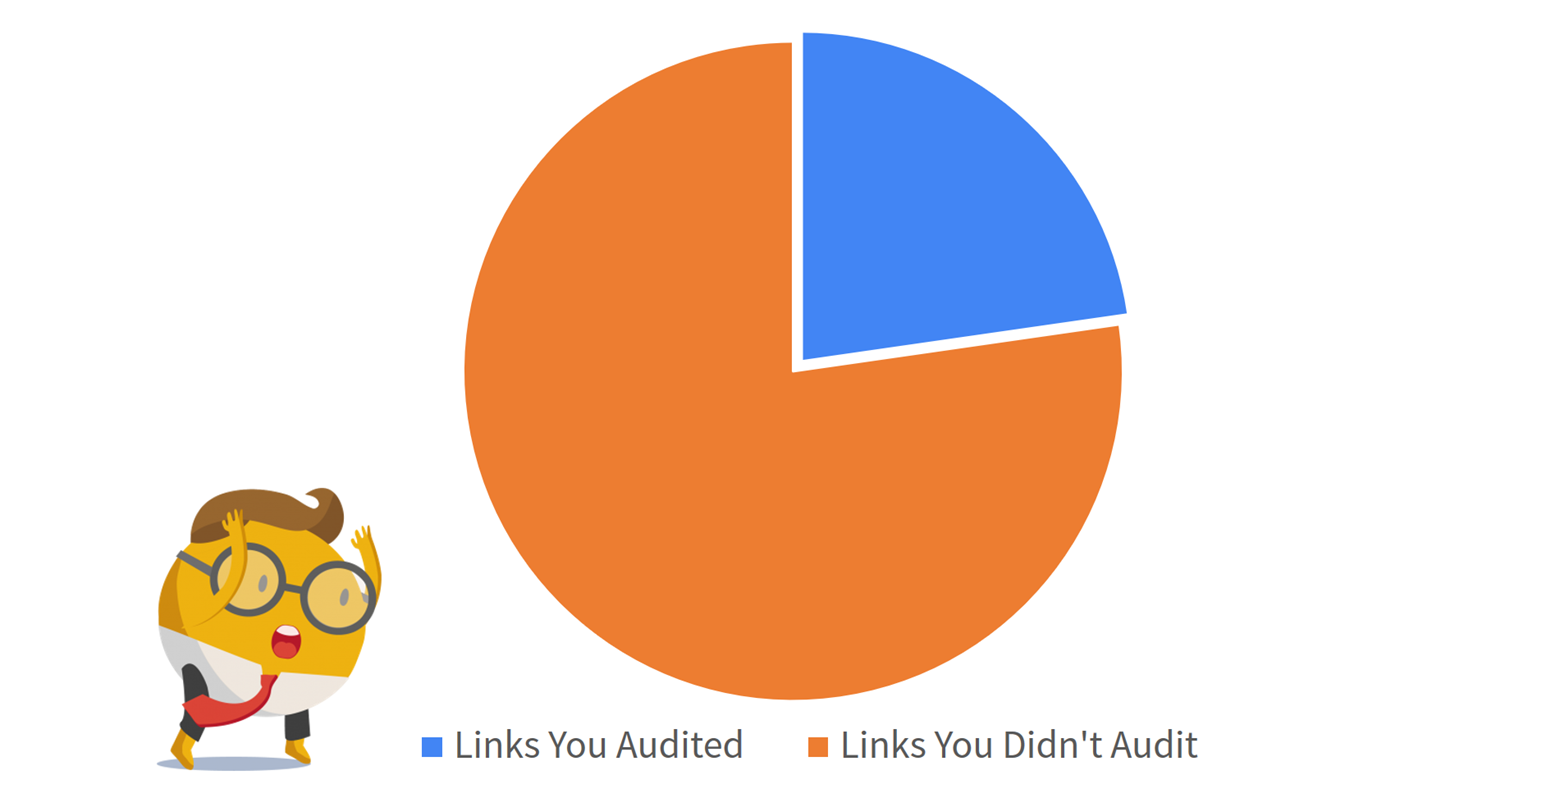 backlink audit